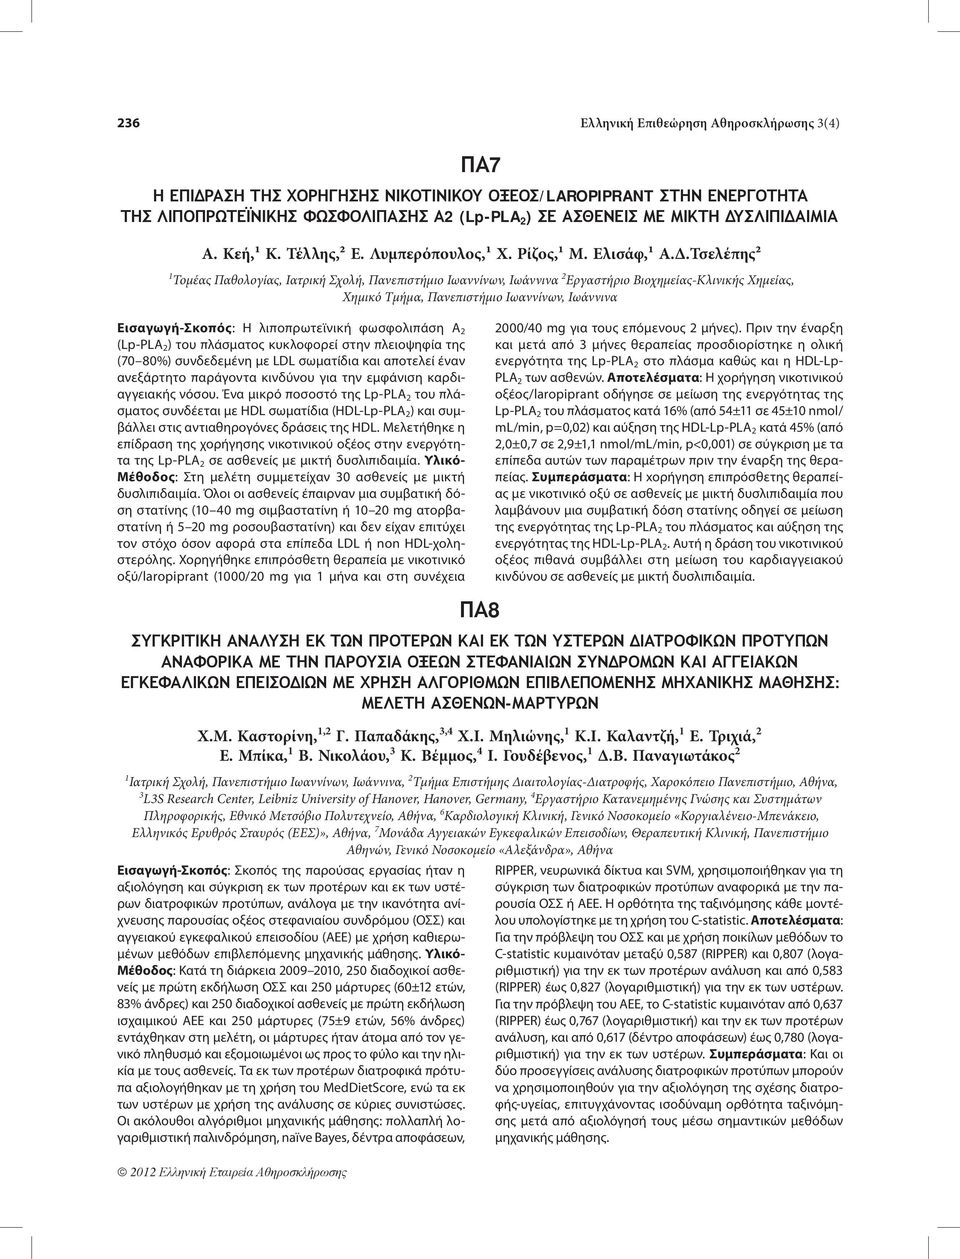 Χημείας, Χημικό Τμήμα, Πανεπιστήμιο Ιωαννίνων, Ιωάννινα Εισαγωγή-Σκοπός: Η λιποπρωτεϊνική φωσφολιπάση Α 2 (Lp-PLA 2 ) του πλάσματος κυκλοφορεί στην πλειοψηφία της (70 80%) συνδεδεμένη με LDL